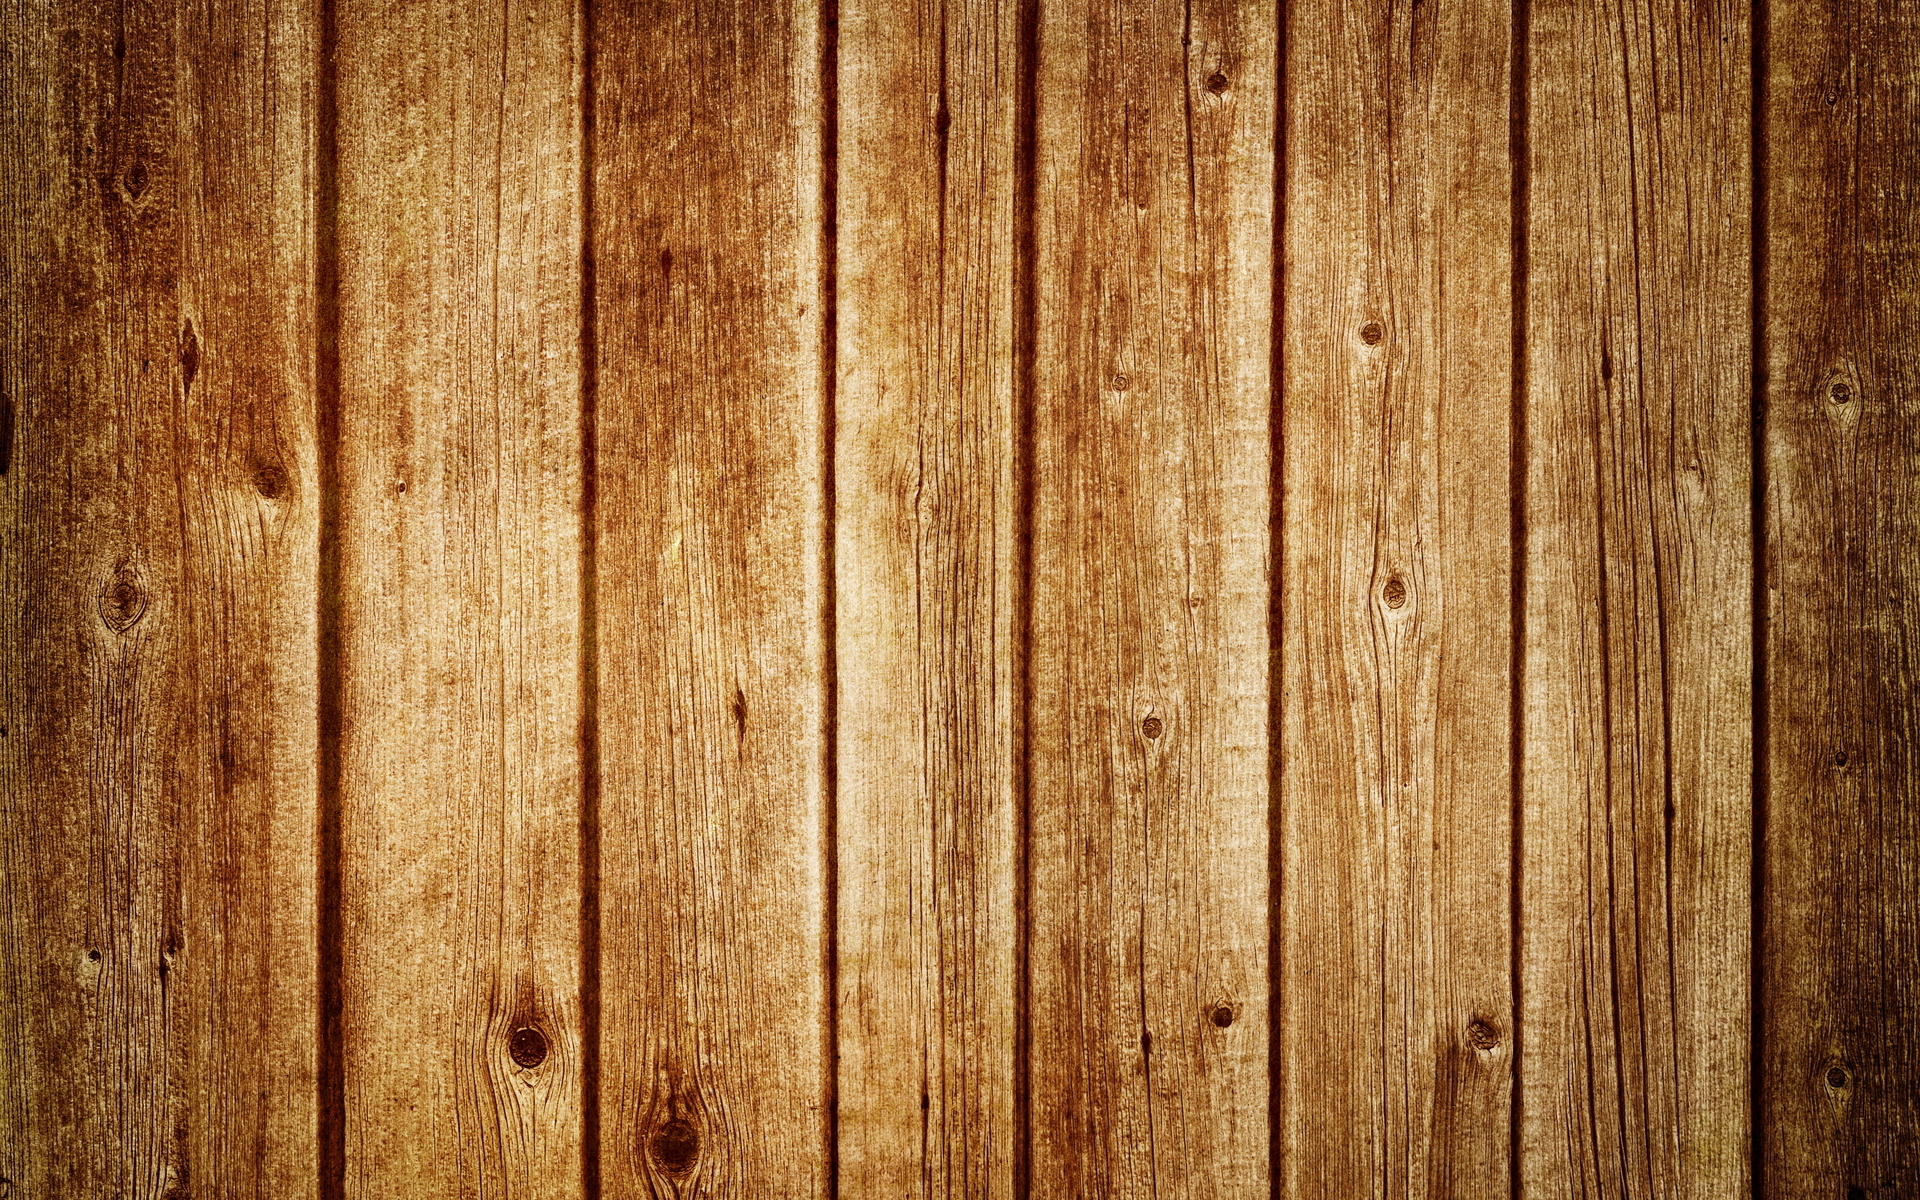 Thưởng thức chiếc hình nền gỗ đẹp là một trải nghiệm lý tưởng để thư giãn và tìm cảm hứng. Với những tấm gỗ được tạo ra để tái chế, chiếc hình nền gỗ của bạn đồng thời mang lại vẻ đẹp tự nhiên và tôn lên vẻ đẹp của trái đất. Bạn sẽ nhận được sự hài lòng từ việc tái sử dụng tài nguyên pri do phòng tránh tình trạng xói mòn môi trường.